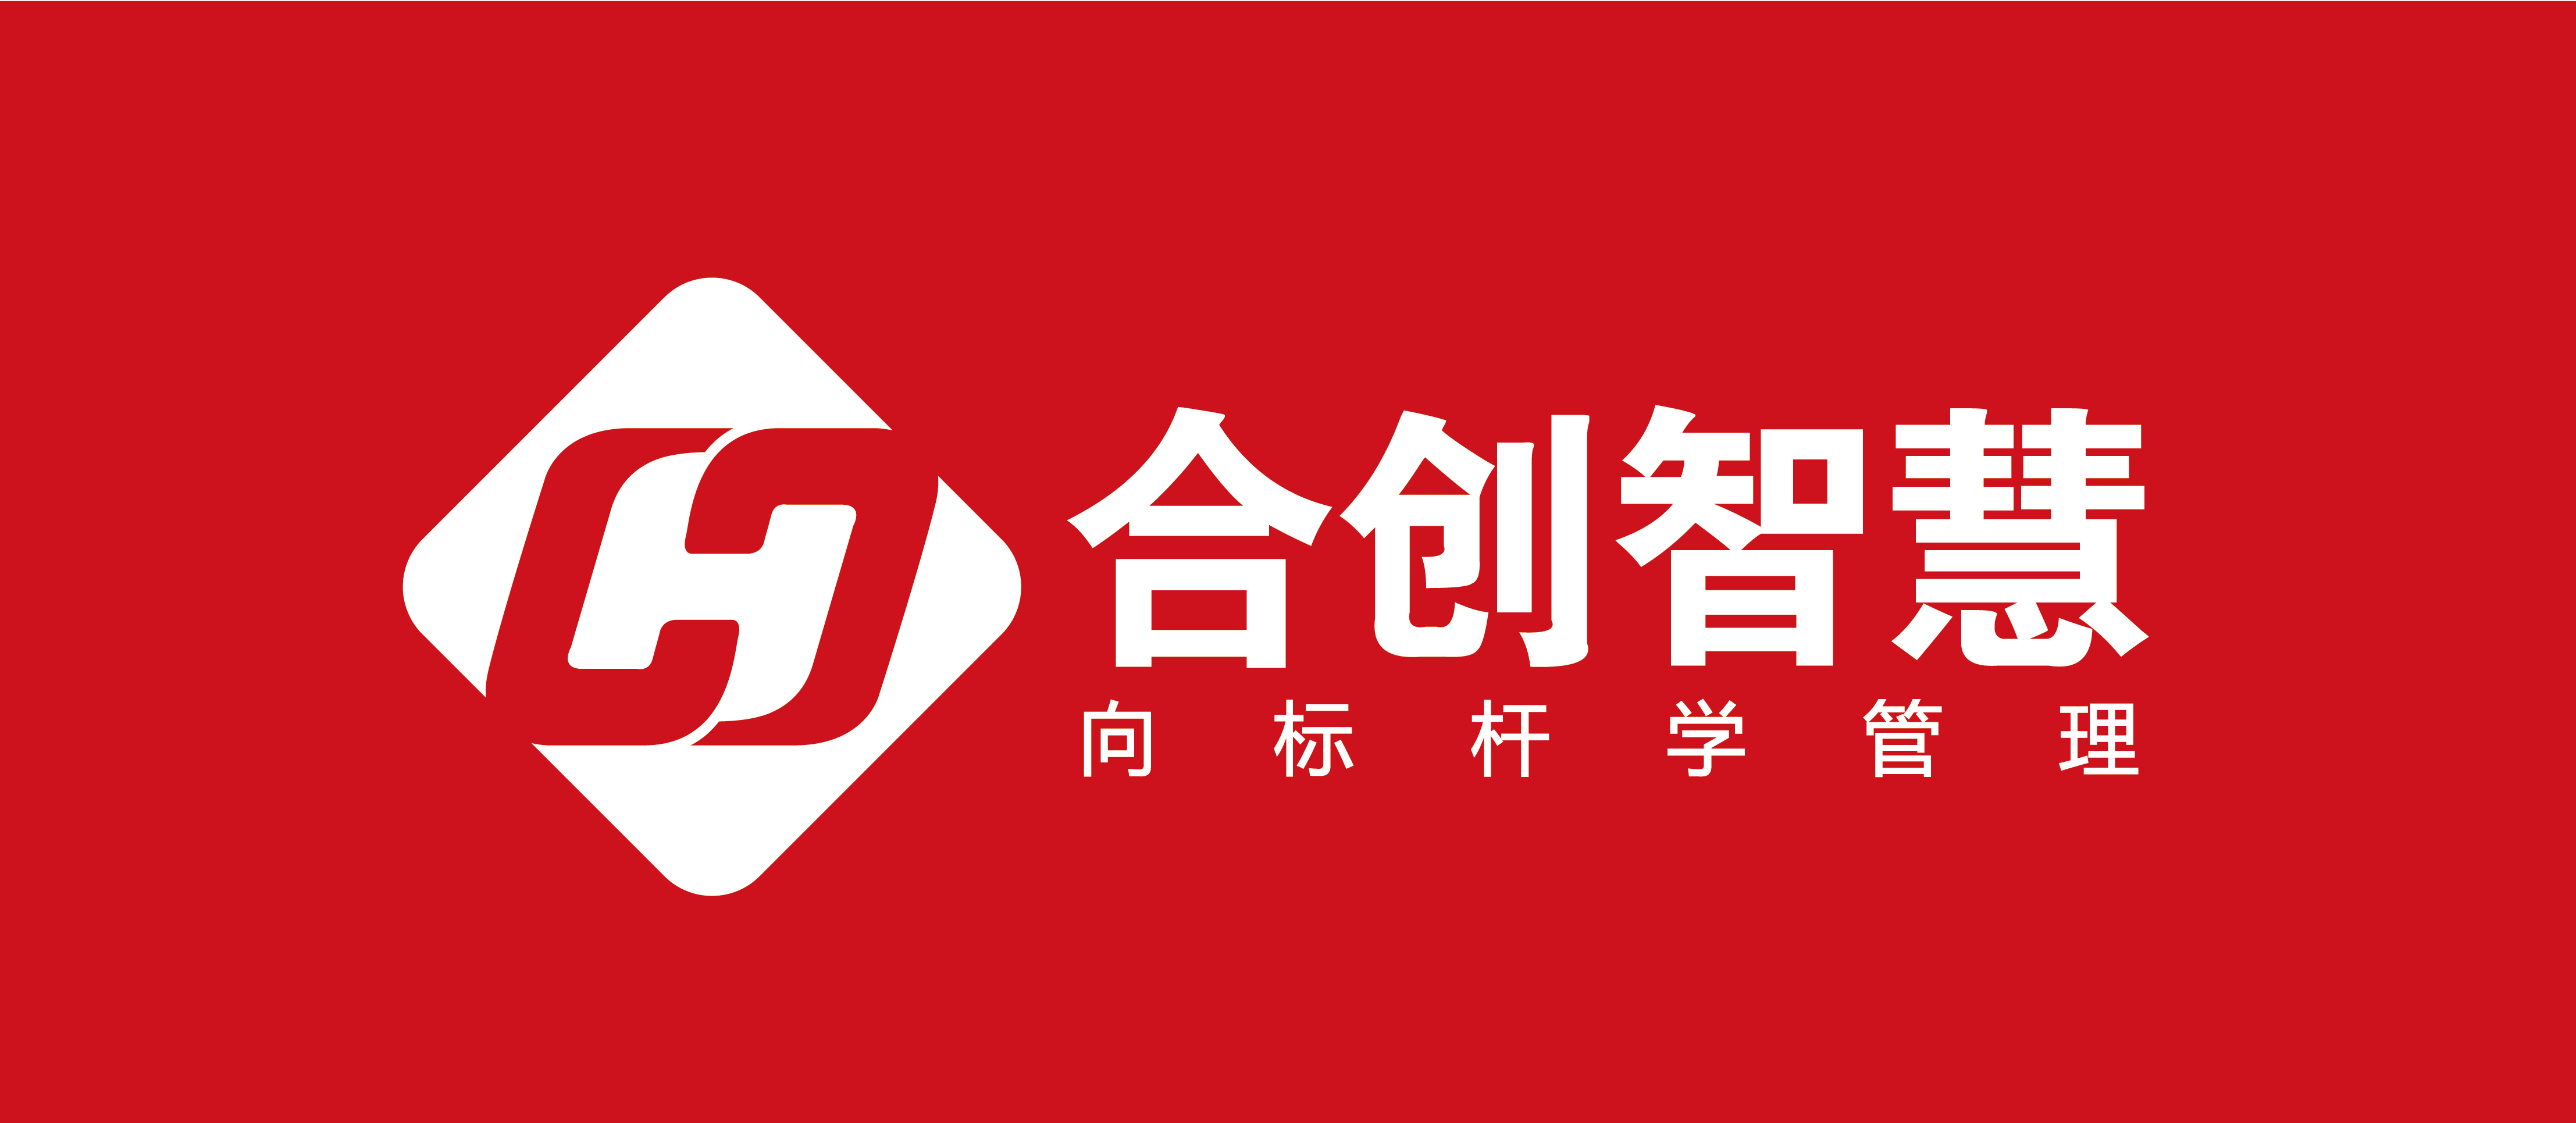 深圳合创智慧企业管理咨询有限公司logo